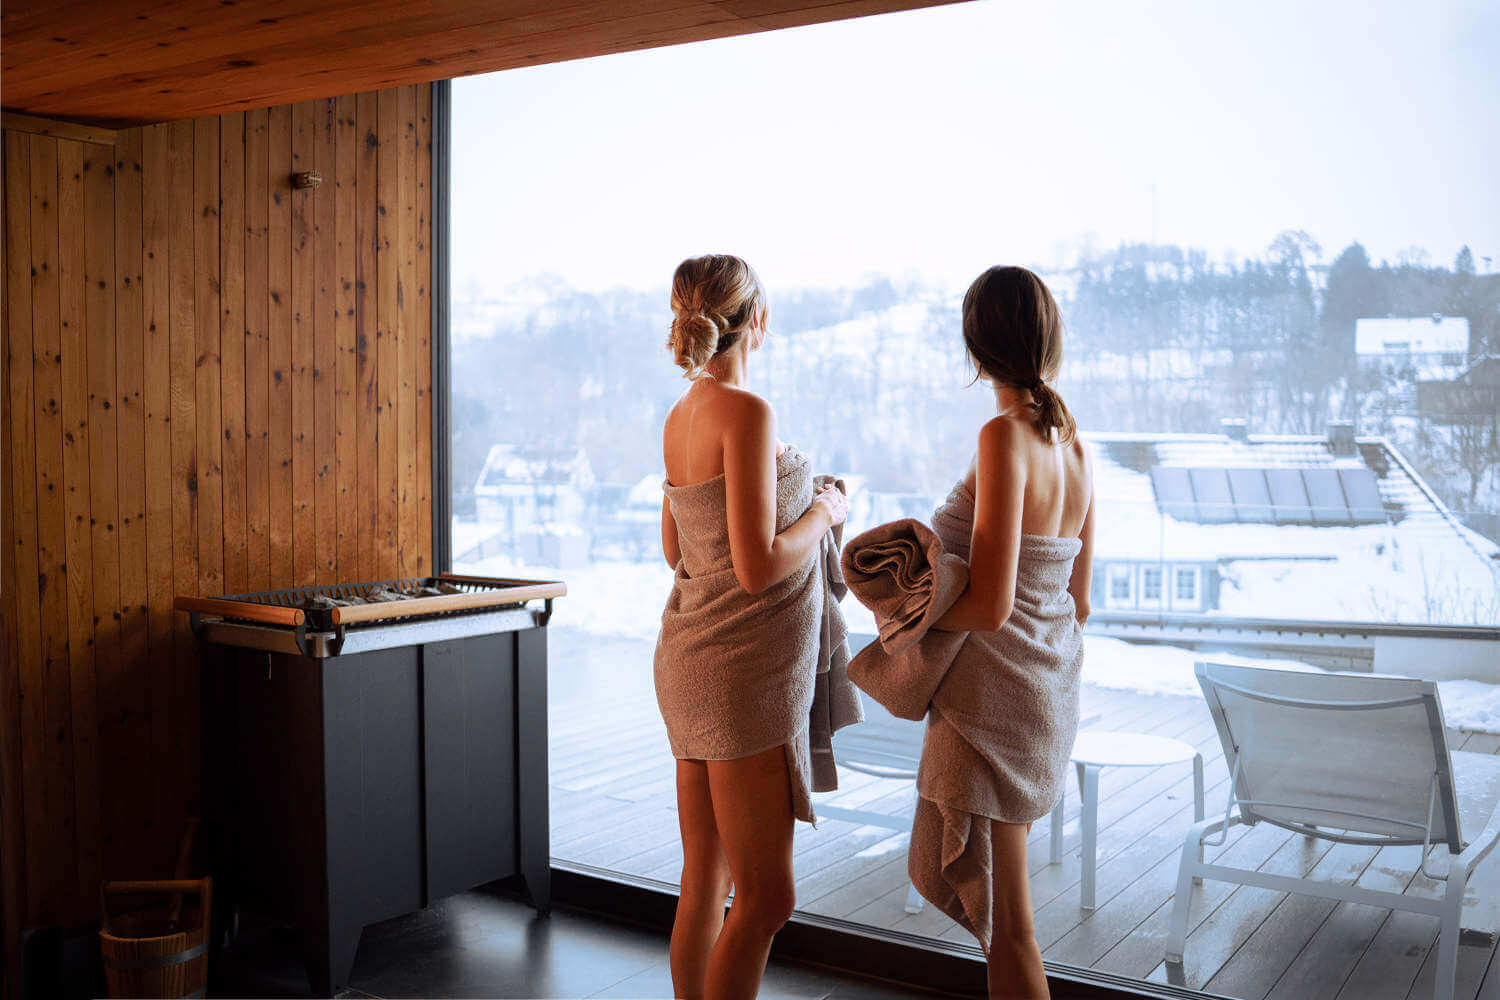 Zwei Frauen in Bademänteln stehen vor einer großen Fensterfront und blicken auf eine verschneite Landschaft hinaus.